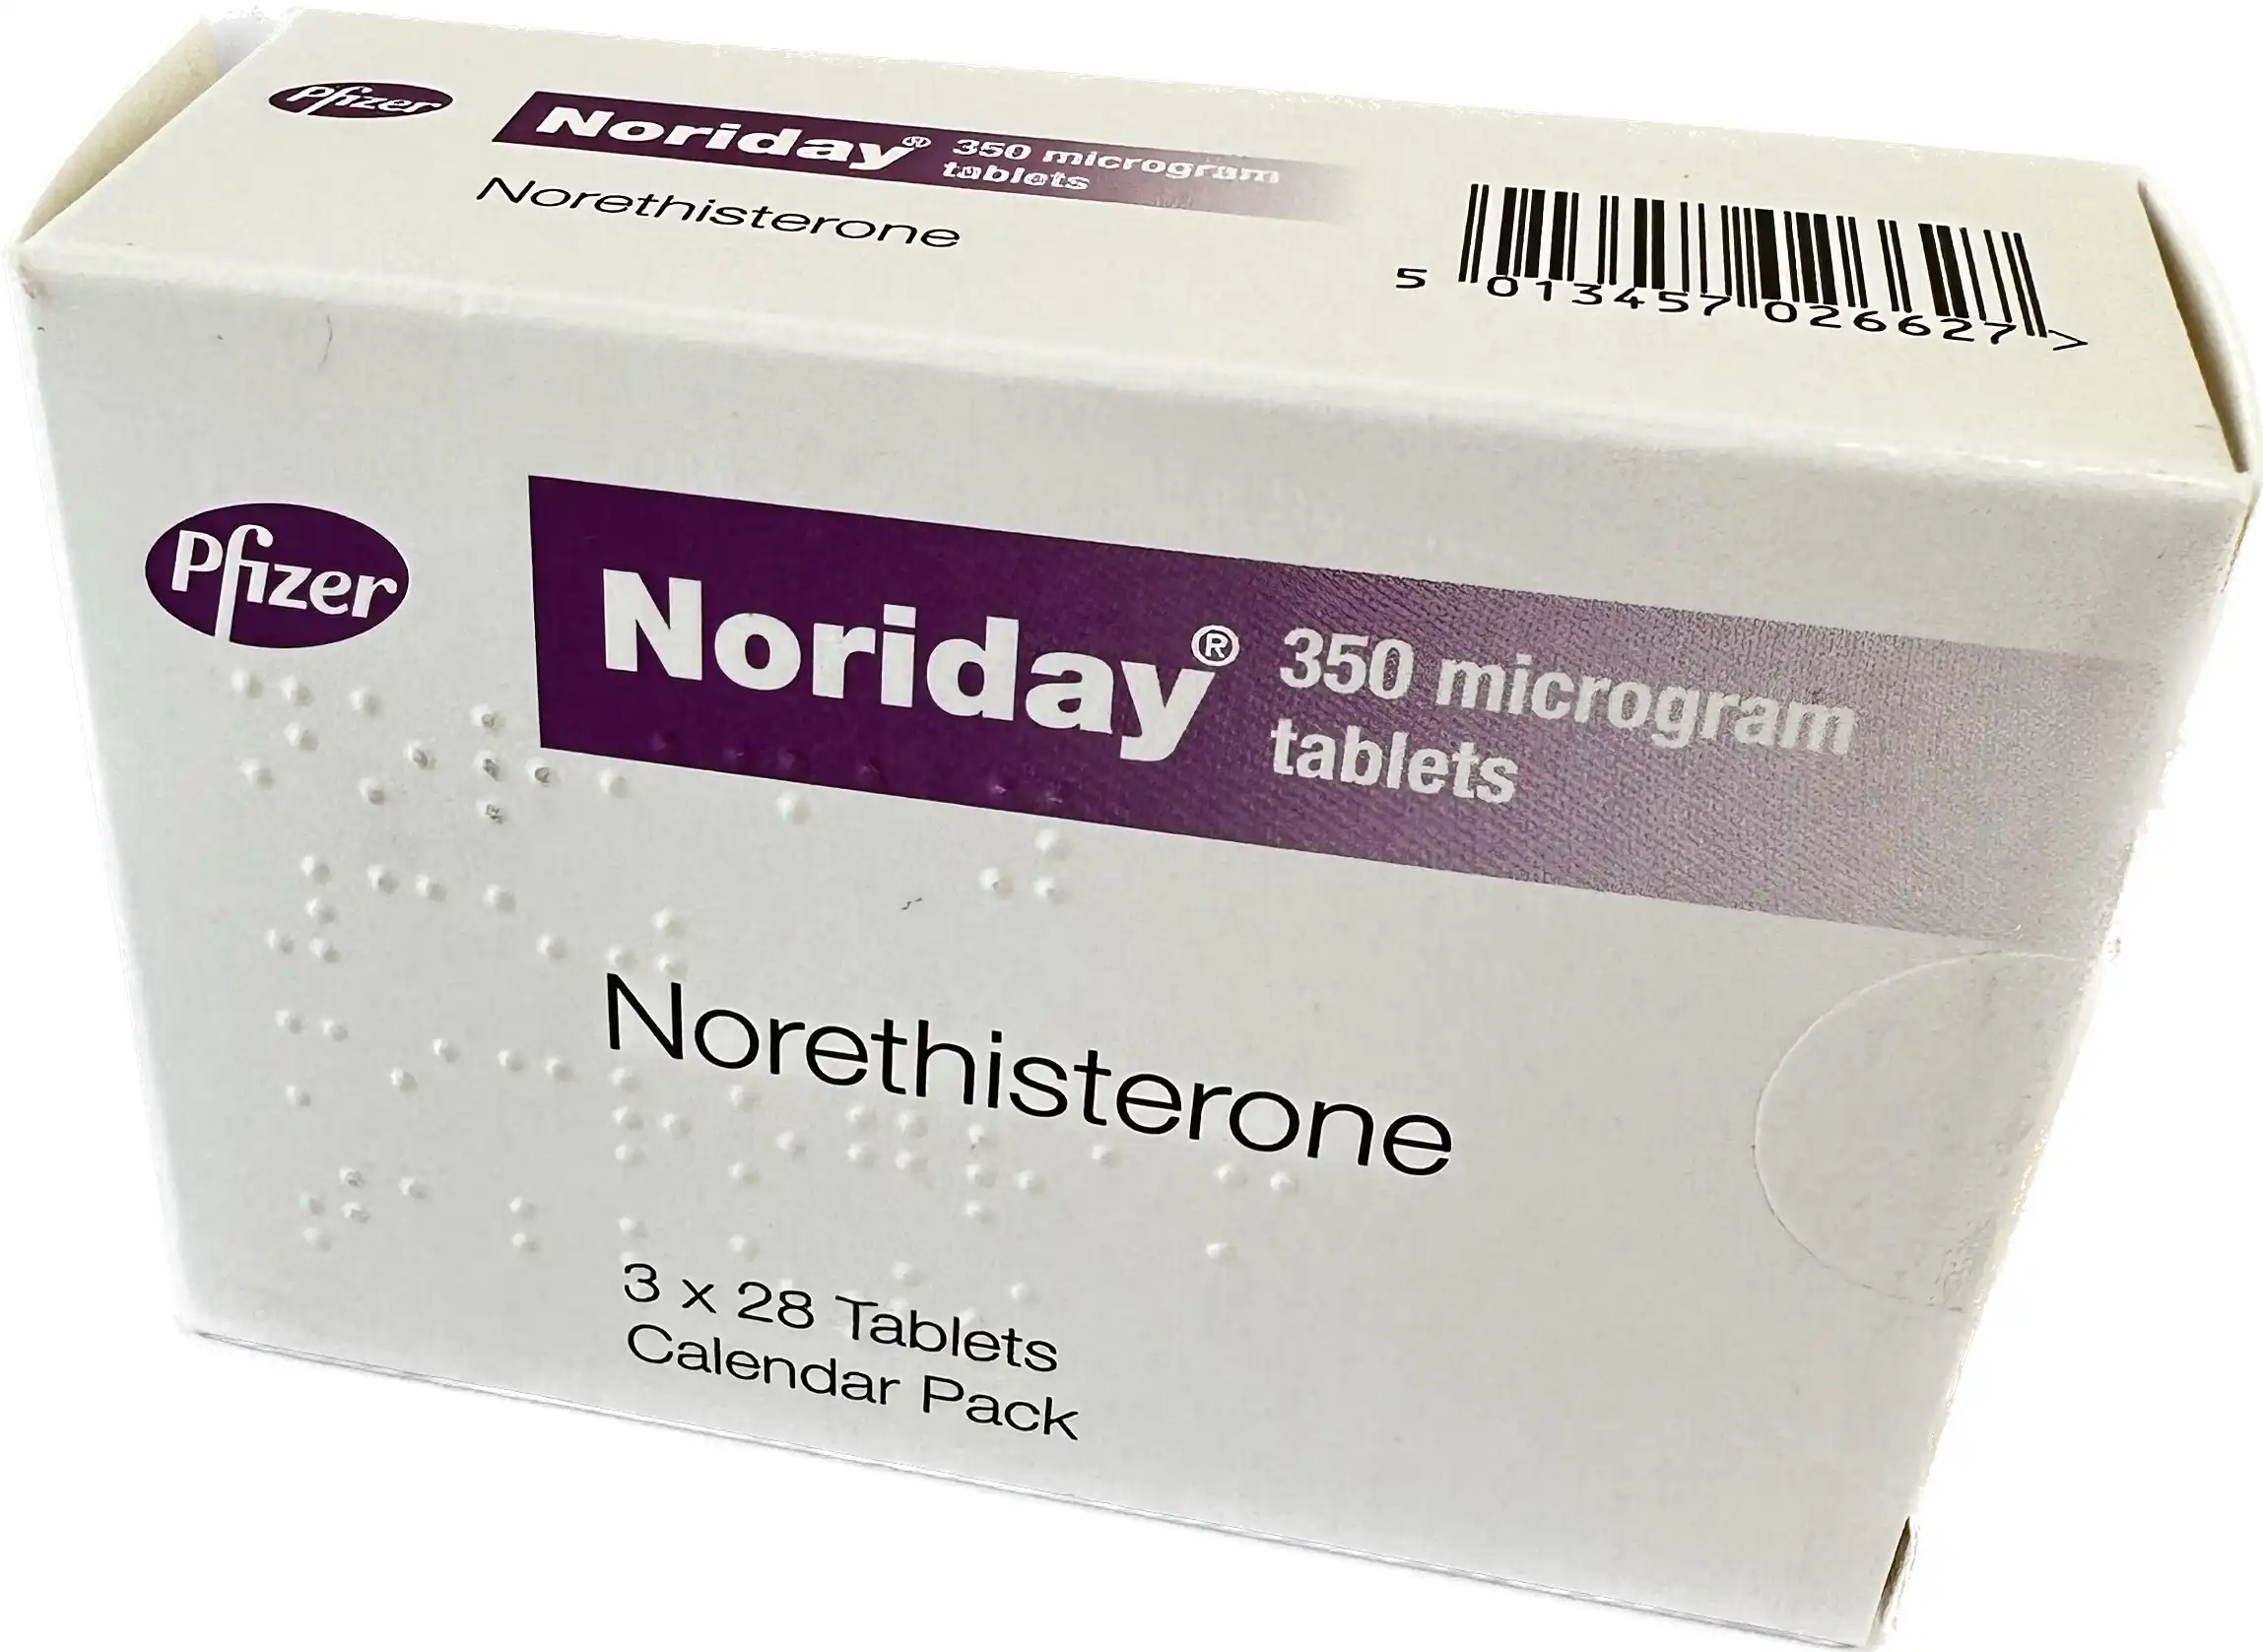 Noriday Contraceptive Pill